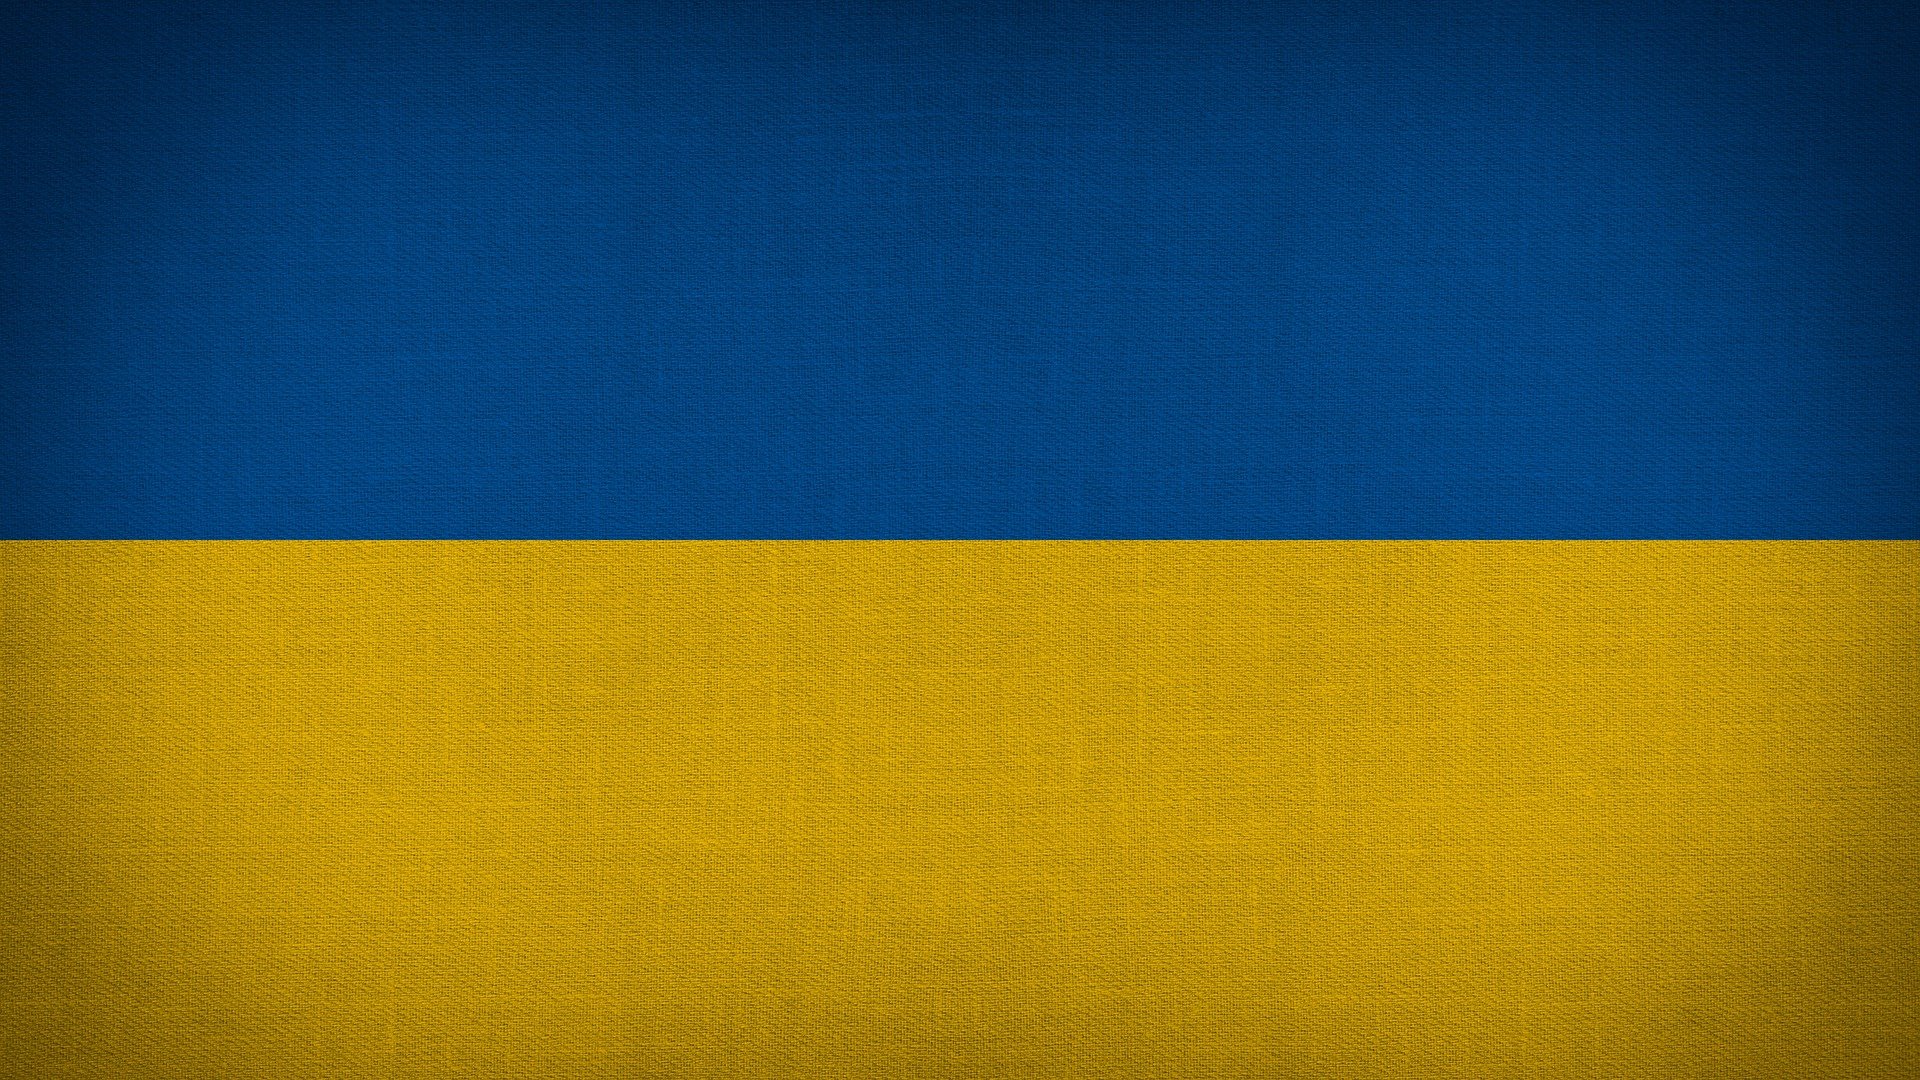 Świadczenie 300 zł dla obywateli Ukrainy